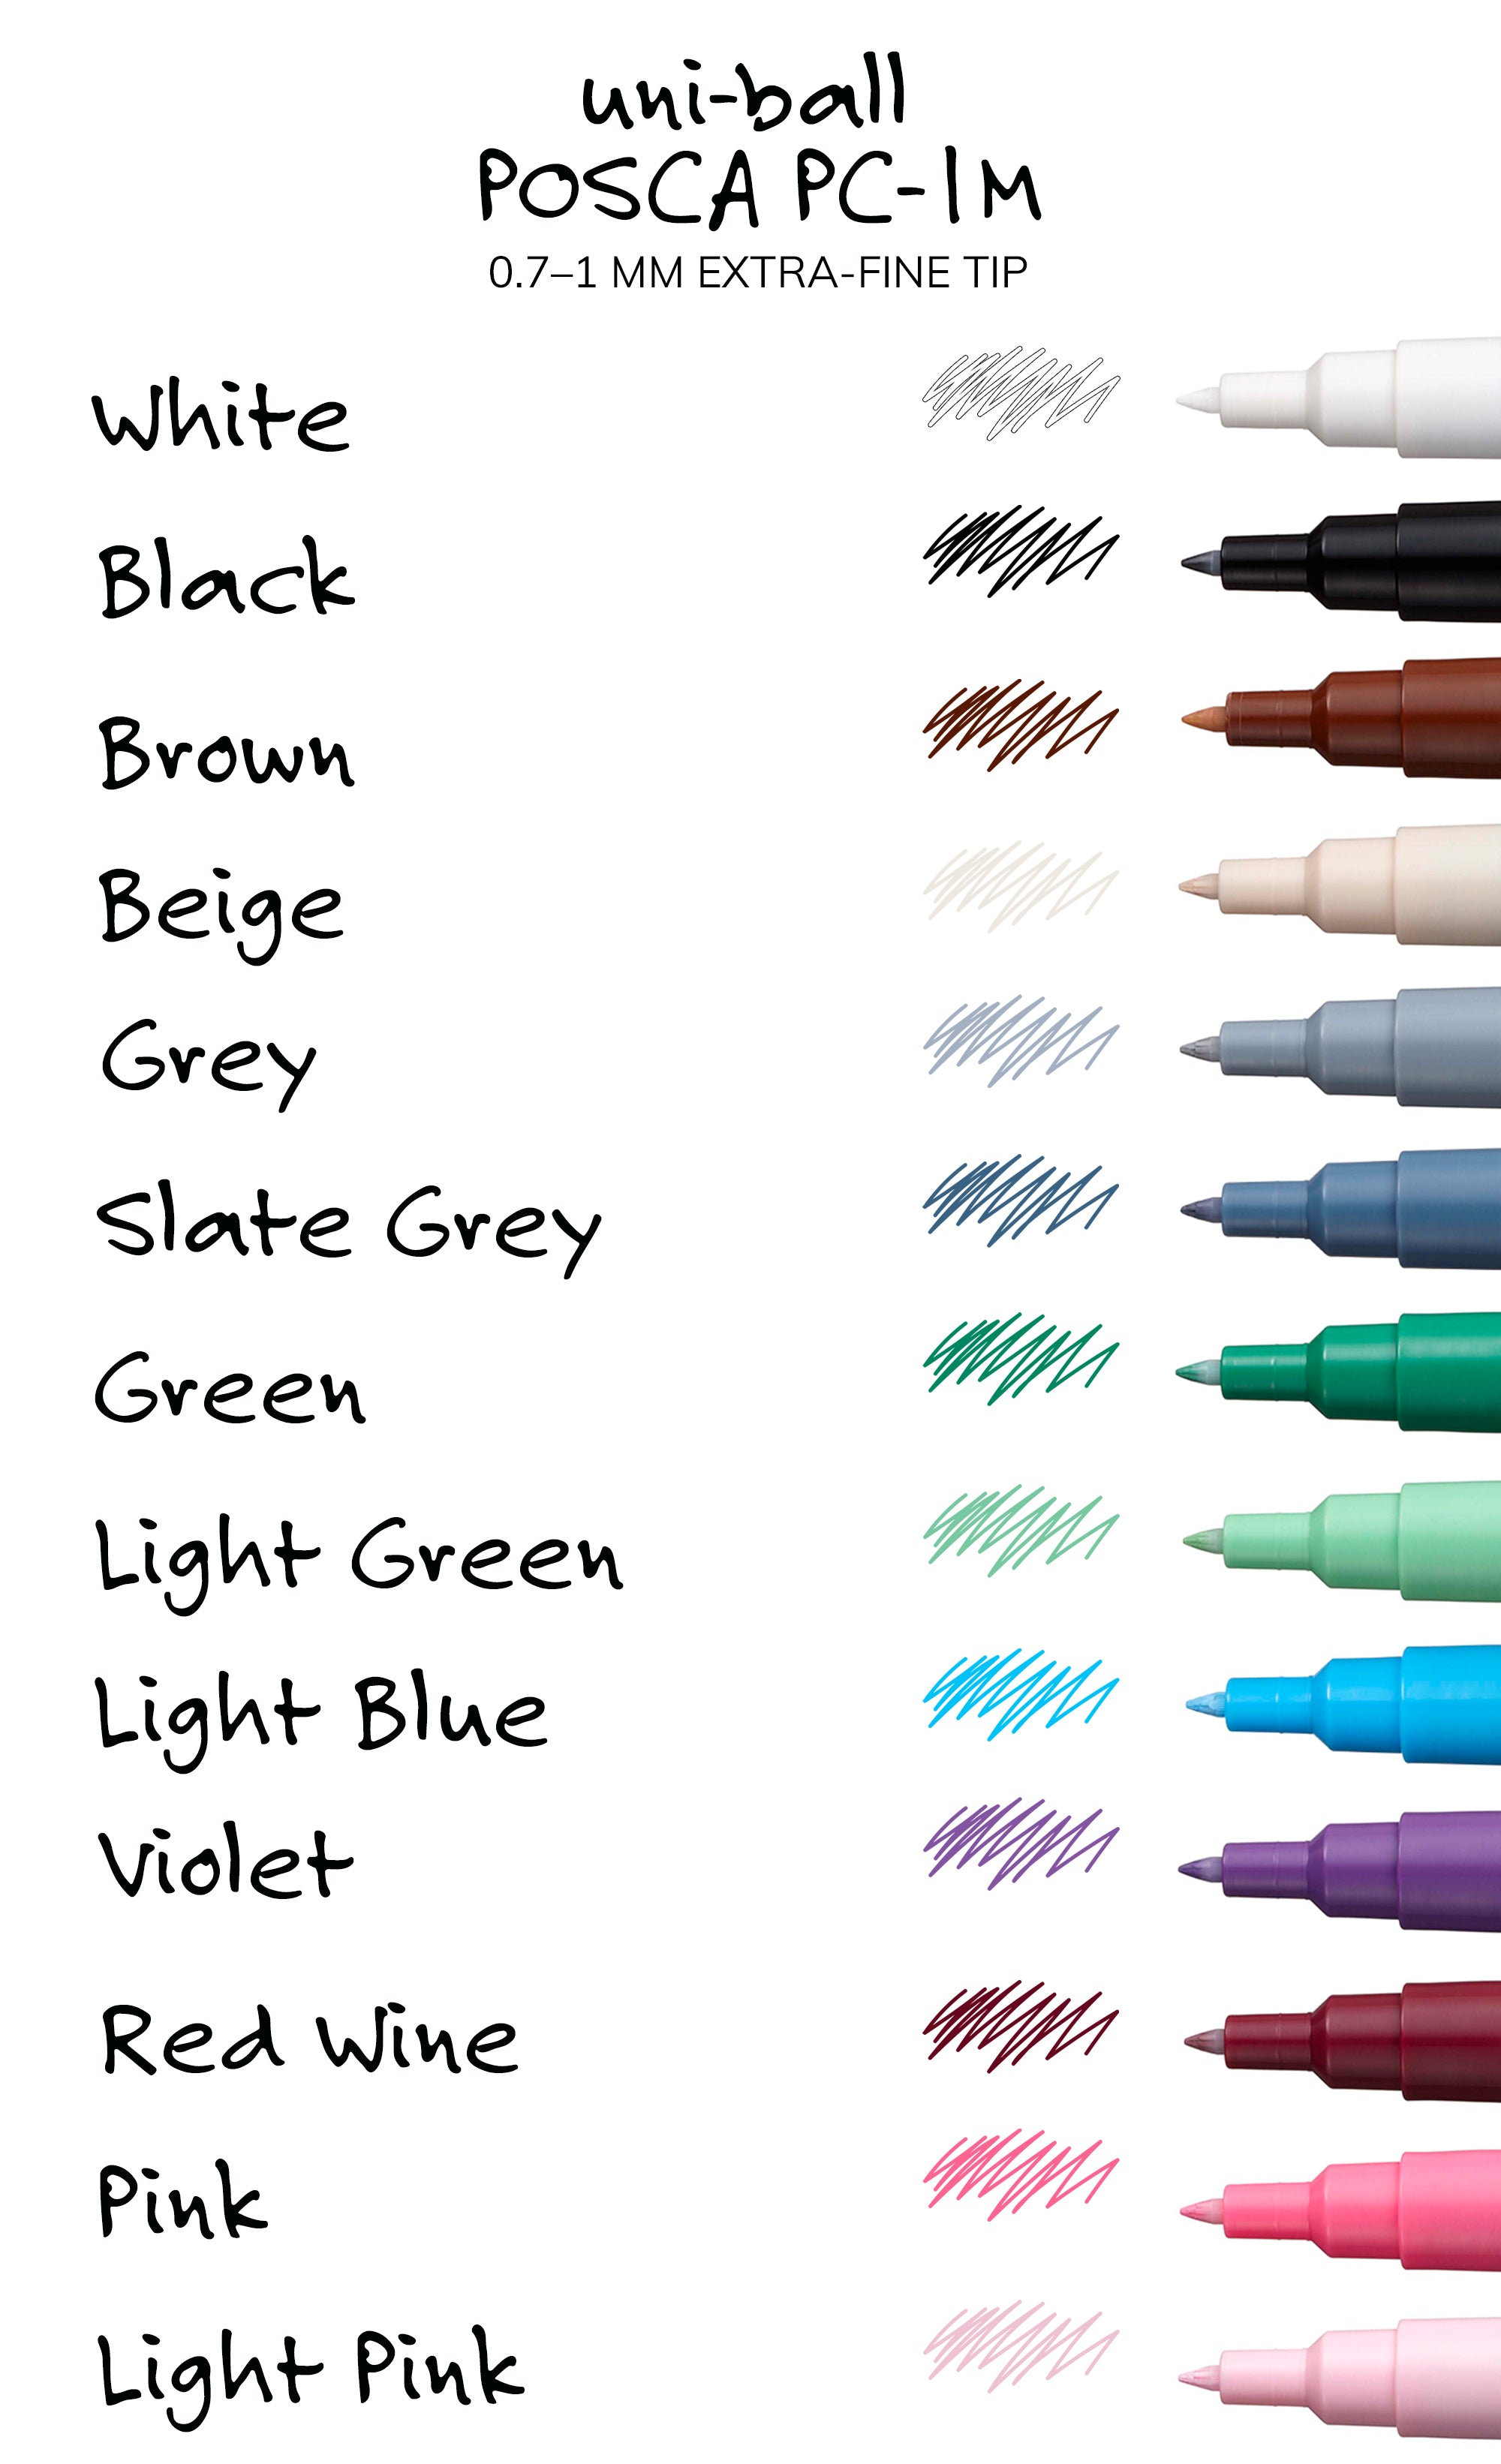 Uni Posca Paint Marker Pen, 0.7mm Extra Fine Point 12 Colors Set